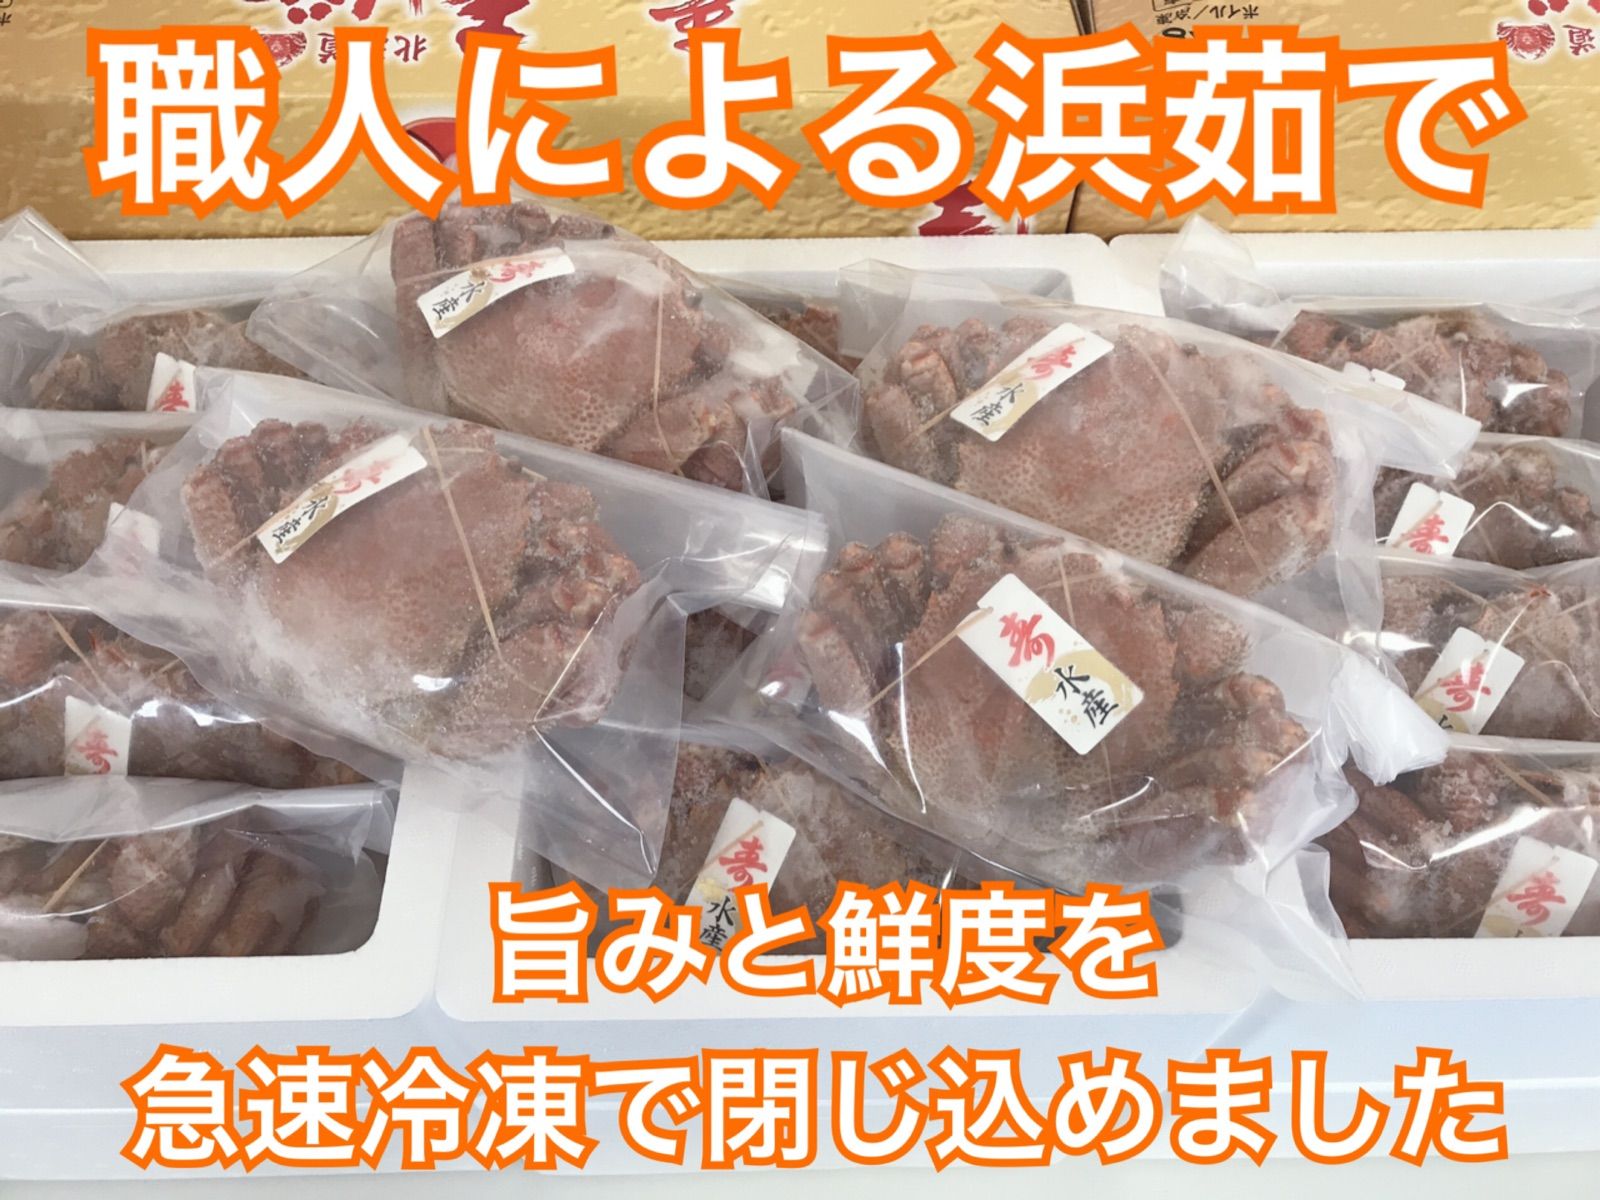 【激安特価】北海道産 毛蟹 約500g 身もミソも濃厚 3特 冷凍 ボイル-4